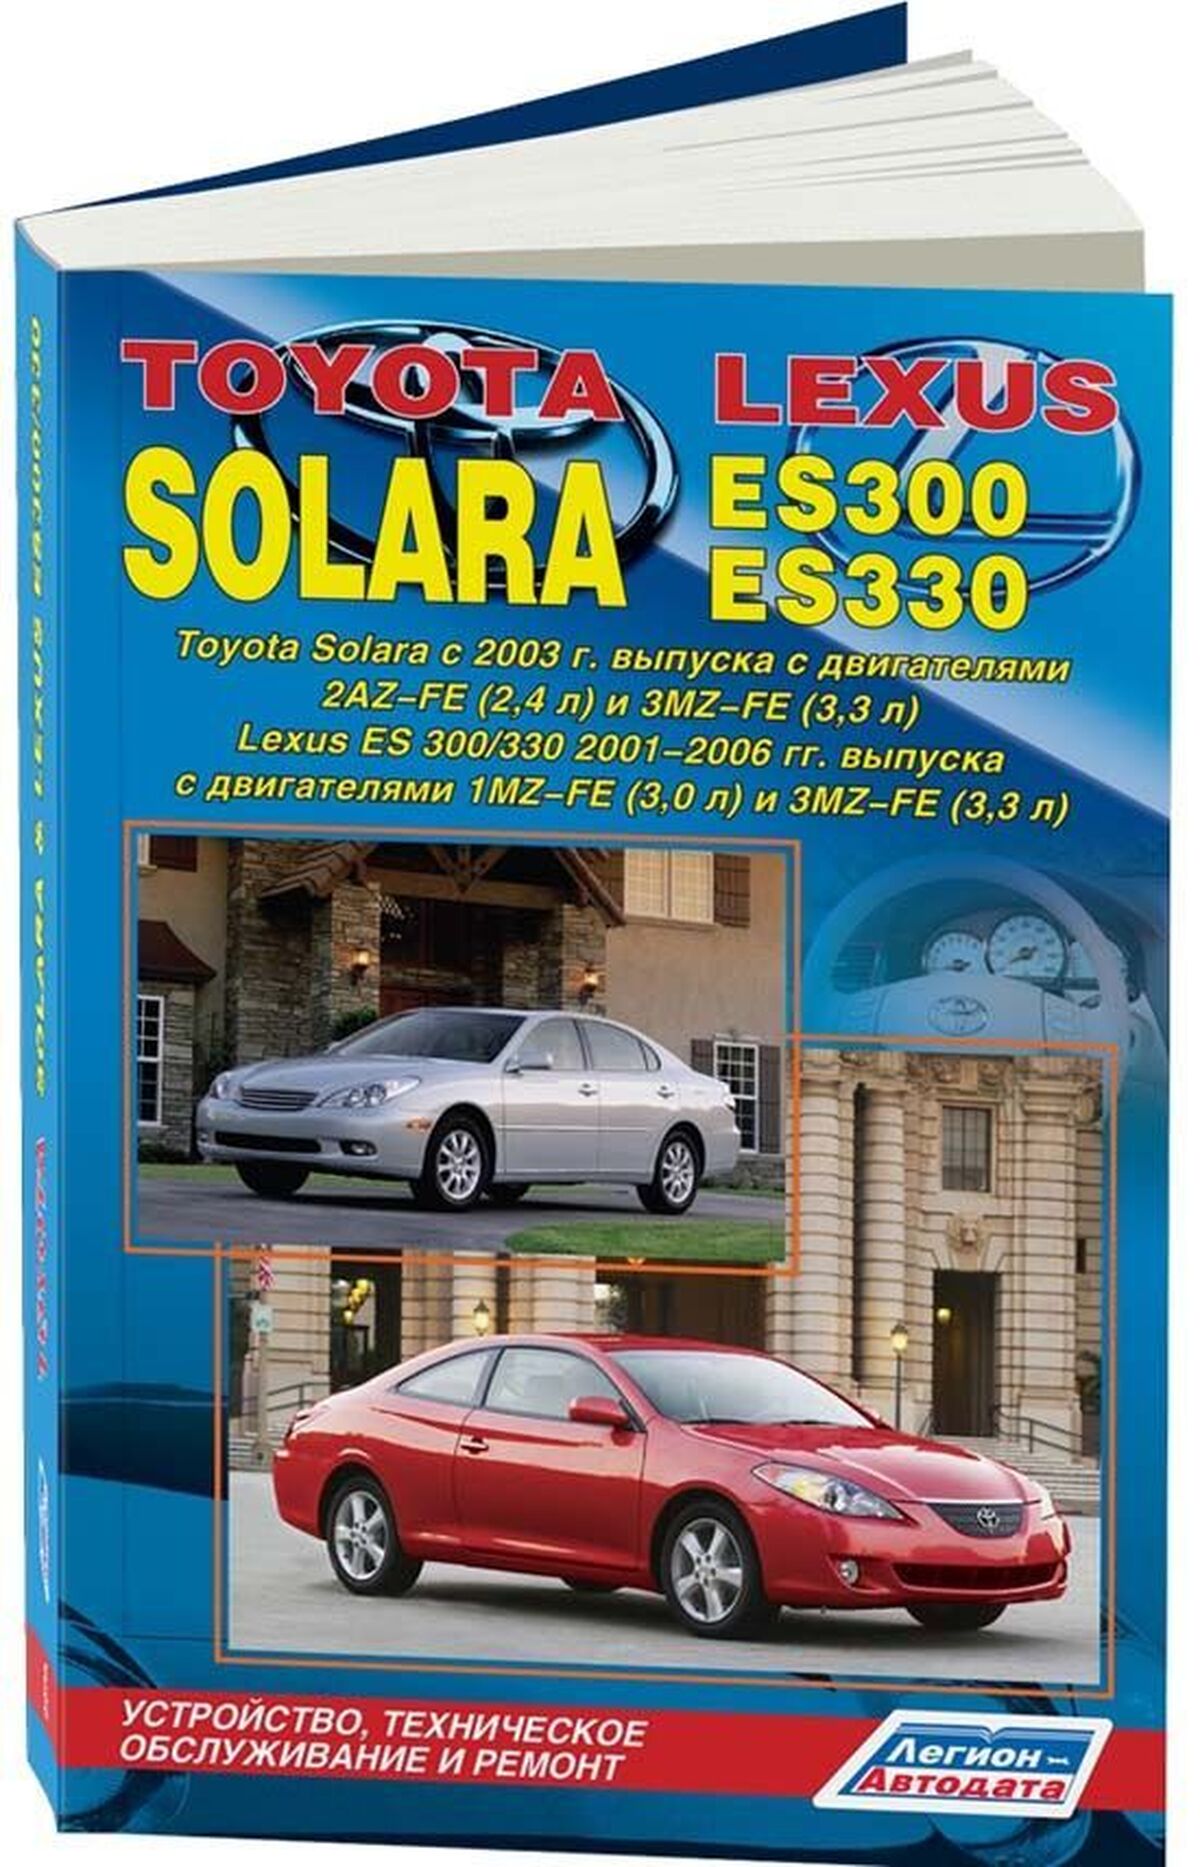 Книга: TOYOTA SOLARA / LEXUS ES300 / LEXUS ES330 (б) с 2003 г.в., рем., экспл., то | Легион-Aвтодата